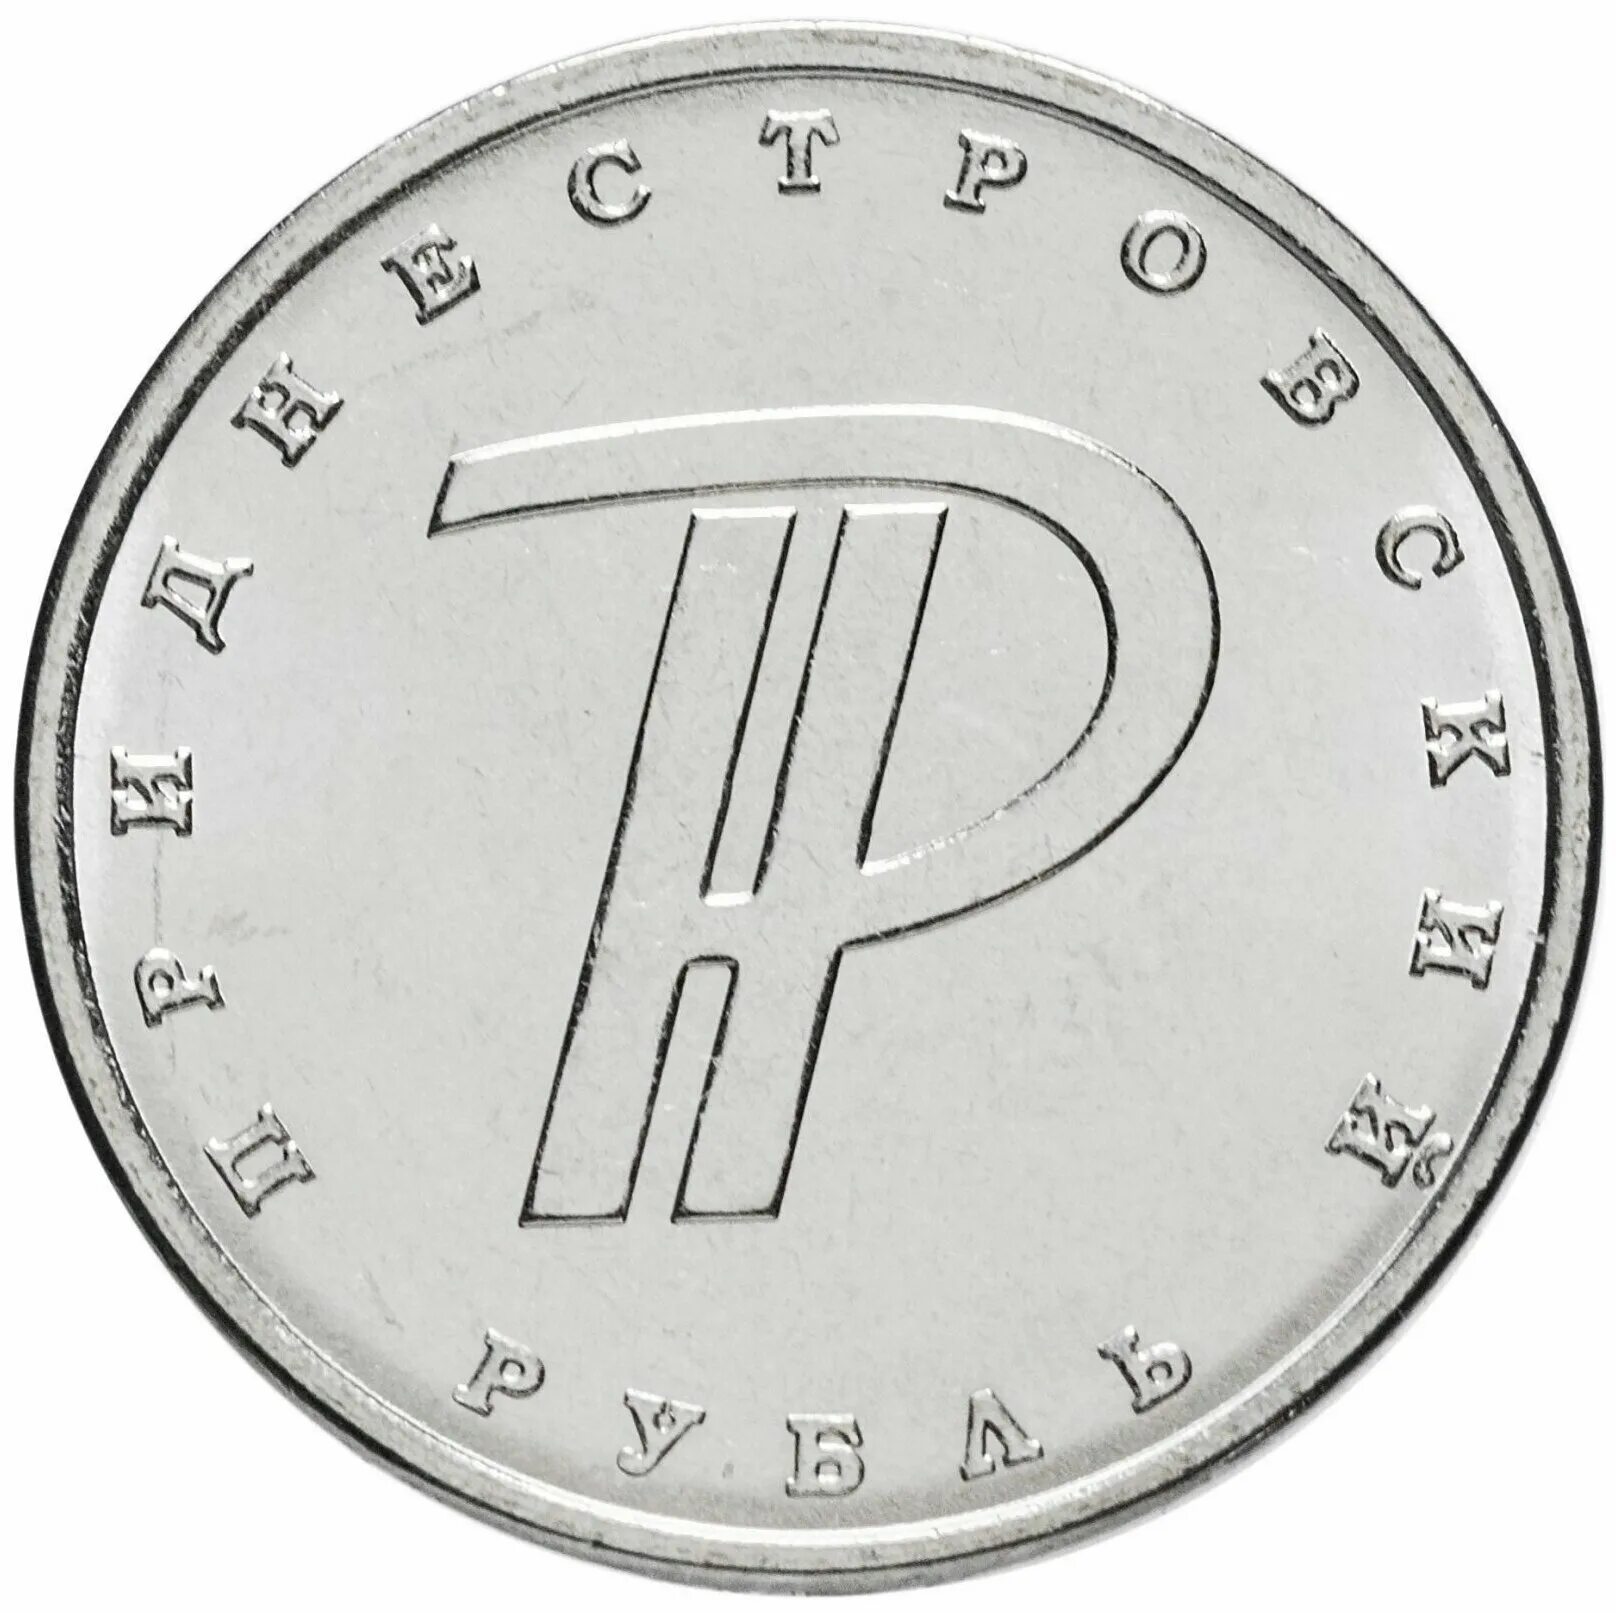 1 руб 2015 года. 1 Рубль Приднестровье. Монета Приднестровья 1 рубль 2015. Приднестровский рубль монета. 1 Рубль ПМР монета.